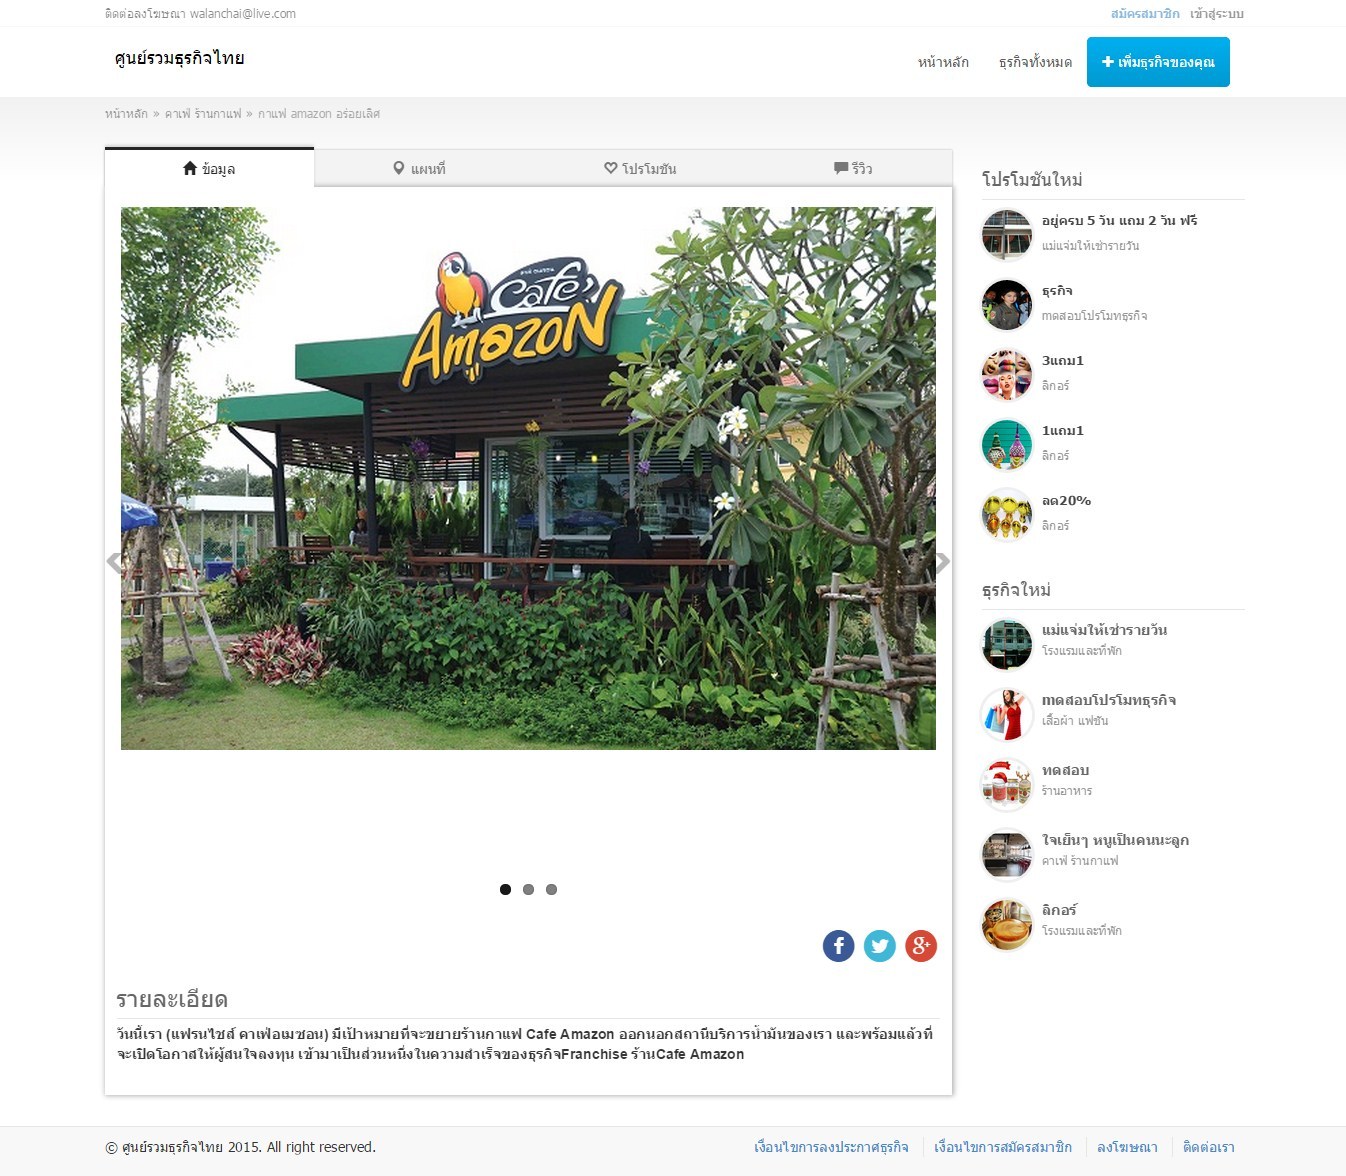 ภาพที่ 2 สคริปเว็บแนะนำ รีวิว ร้านอาหาร สถานที่ท่องเที่ยว โรงแรม รีสอร์ท Responsive Design